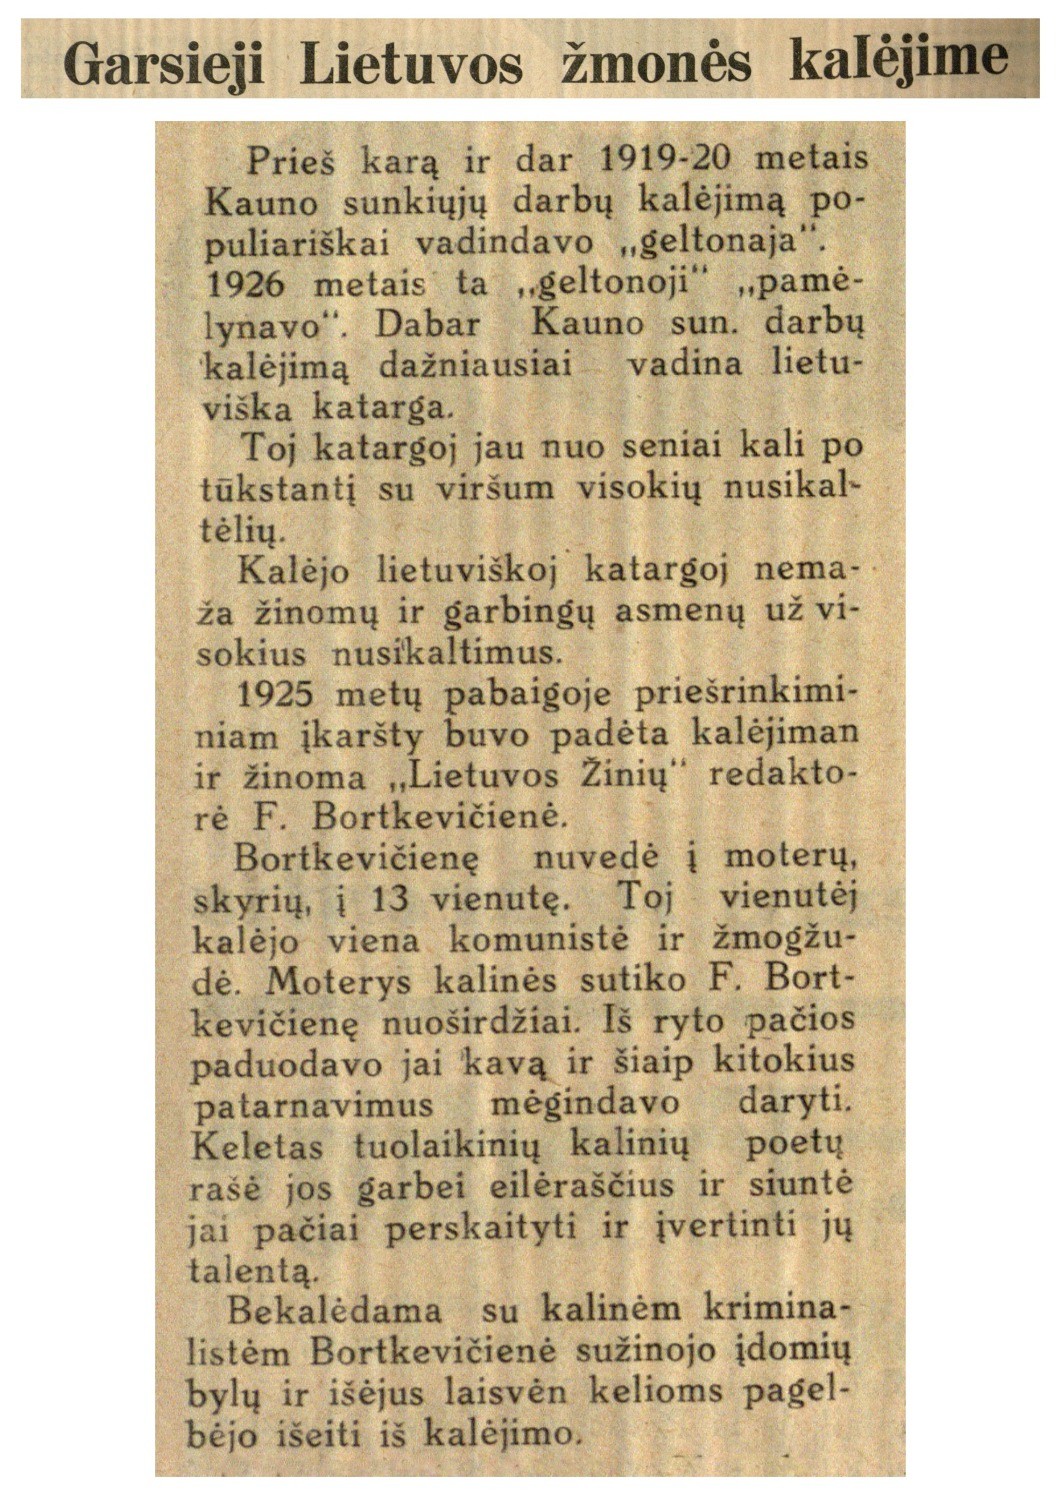 Garsieji Lietuvos žmonės kalėjime: [rašo ir apie 1925 m. pabaigoje suimtą dėl spaudos bylos F. Bortkevičienę]